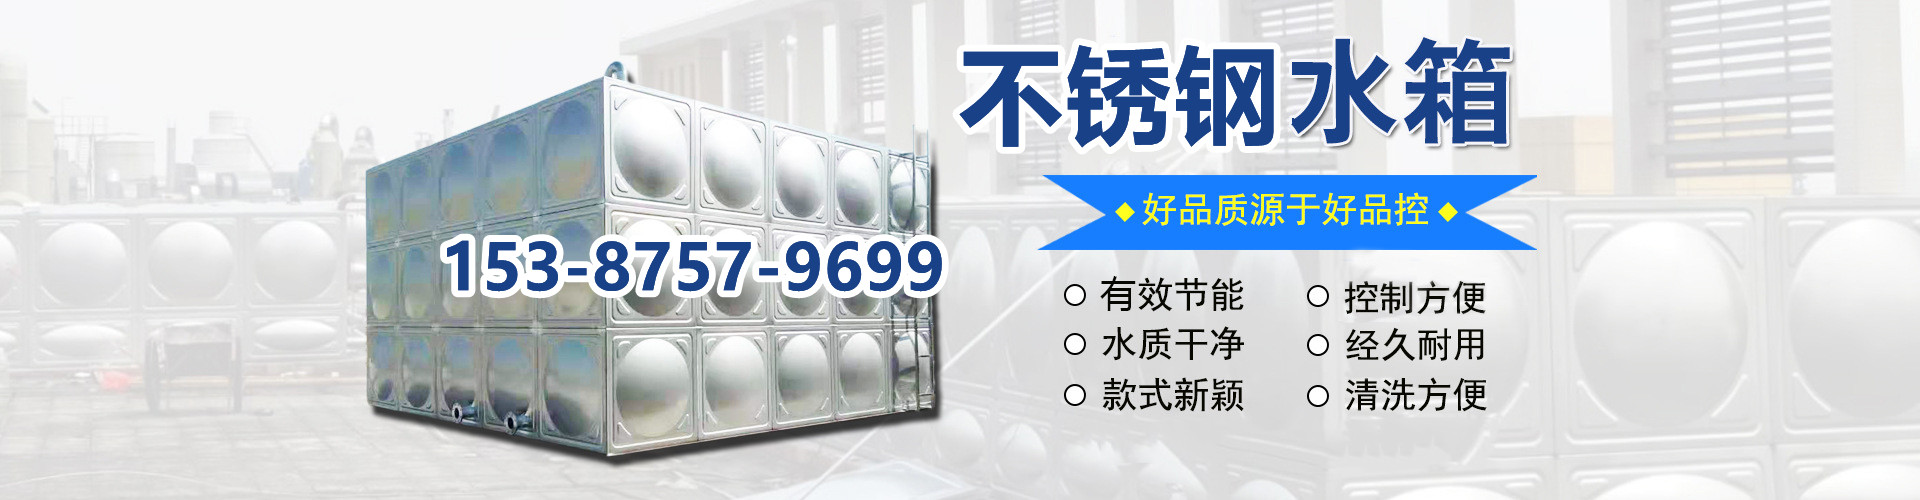 组合式不锈钢水箱、湘西本地组合式不锈钢水箱、湘西、湘西组合式不锈钢水箱